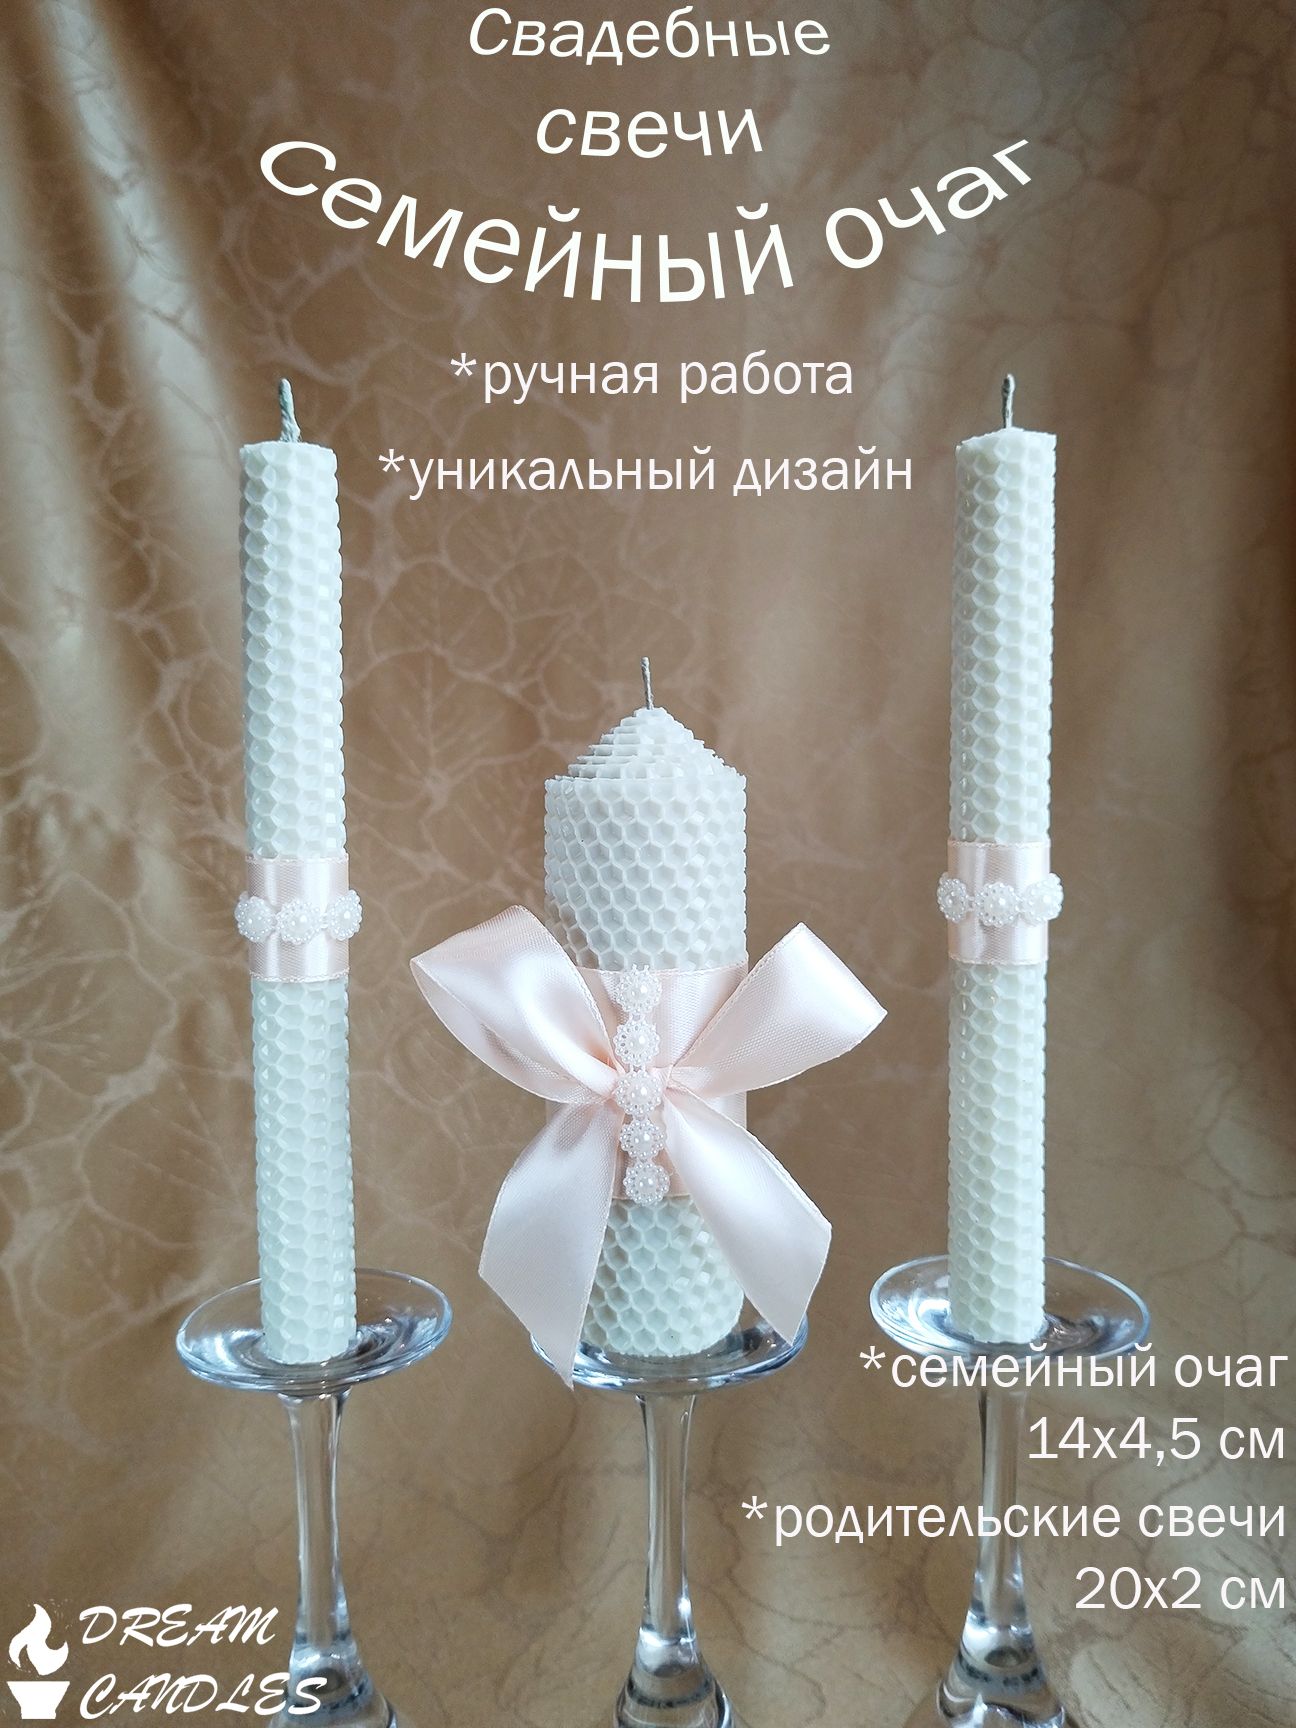 Свадебные свечи семейный очаг ручной работы набор свечей домашний очаг для праздника молодоженов